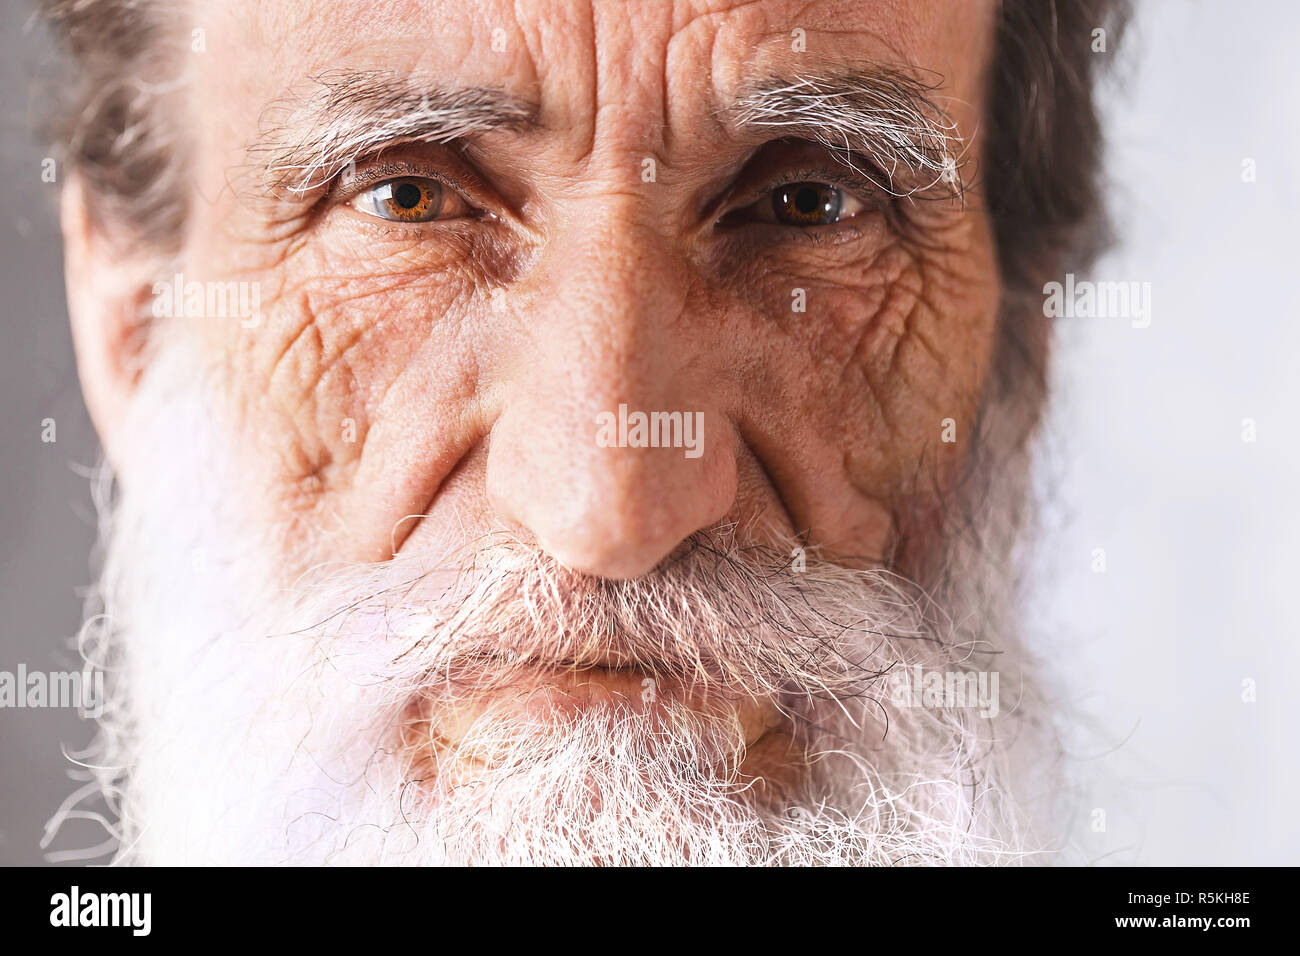 Porträt des zeitgenössischen fröhliche Bärtigen älteren Mann mit Falten im weißen Hemd auf dem grauen Hintergrund, moderne Technik, Kommunikation Konzept Stockfoto